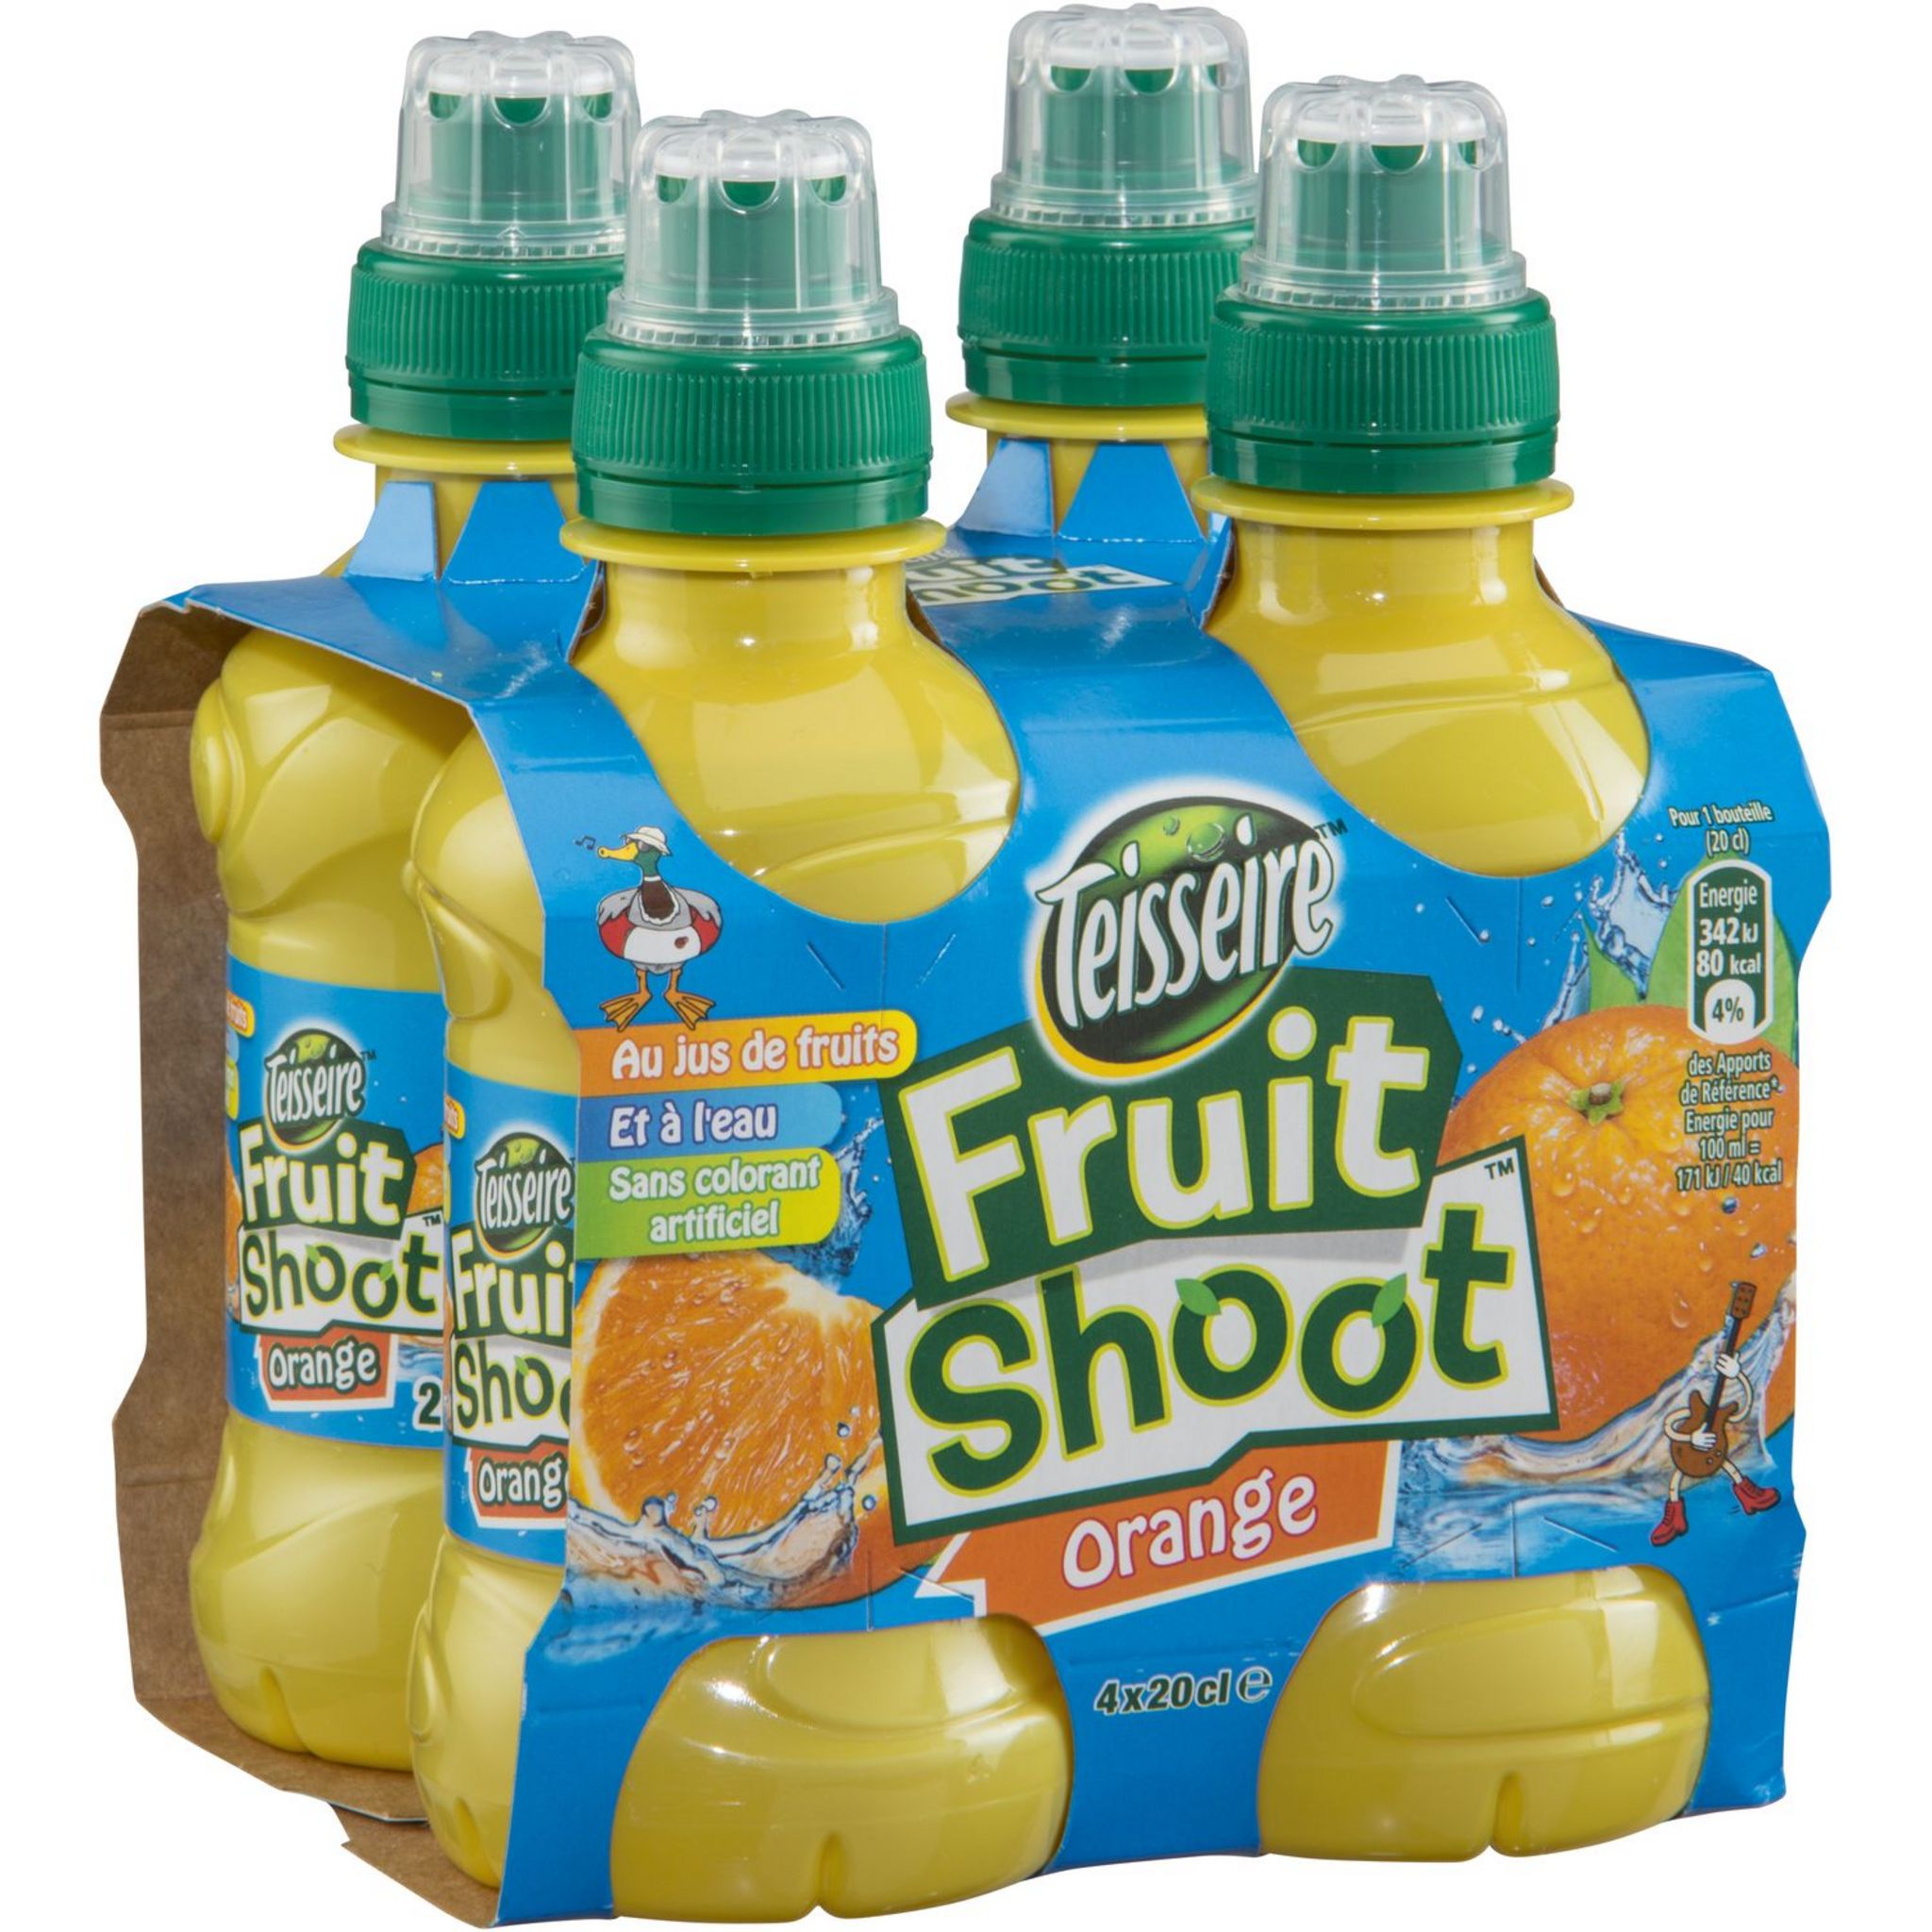 TEISSEIRE Fruit shoot boisson au jus d'orange bouteilles 4x20cl pas cher 